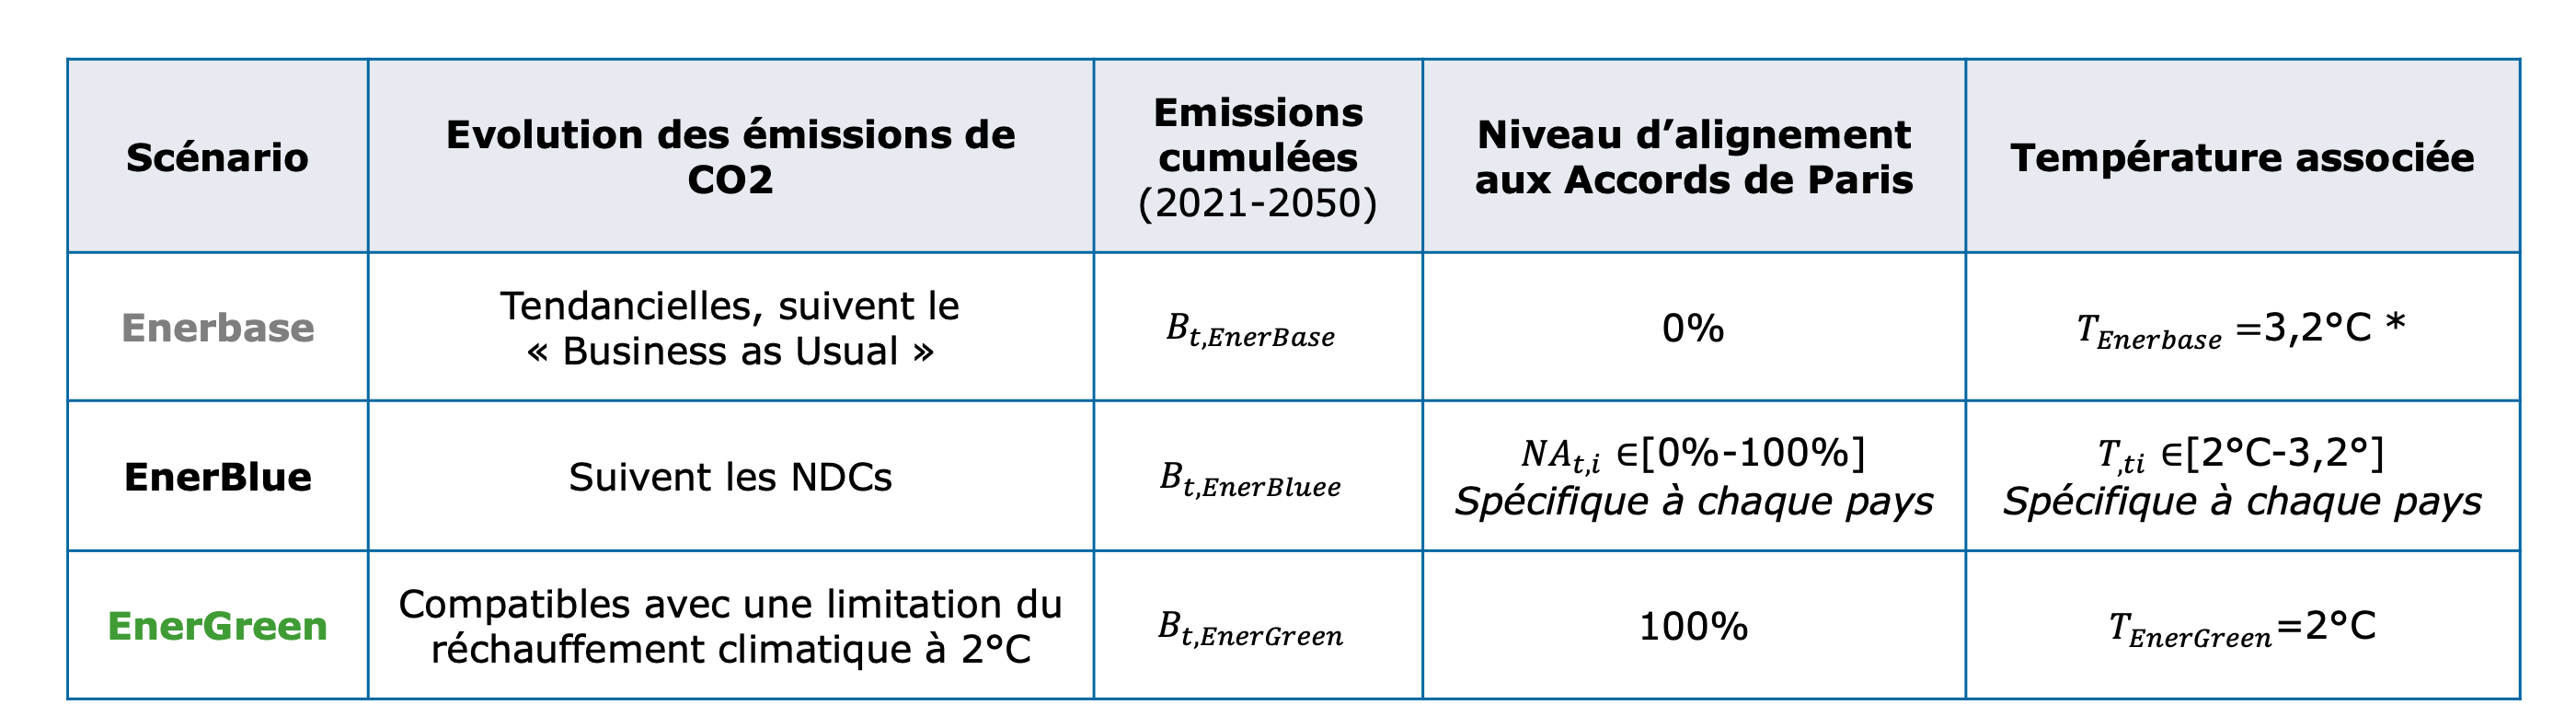 Obligations souveraines : comment mesurer les émissions de GES et l’alignement à l’Accord de Paris ?